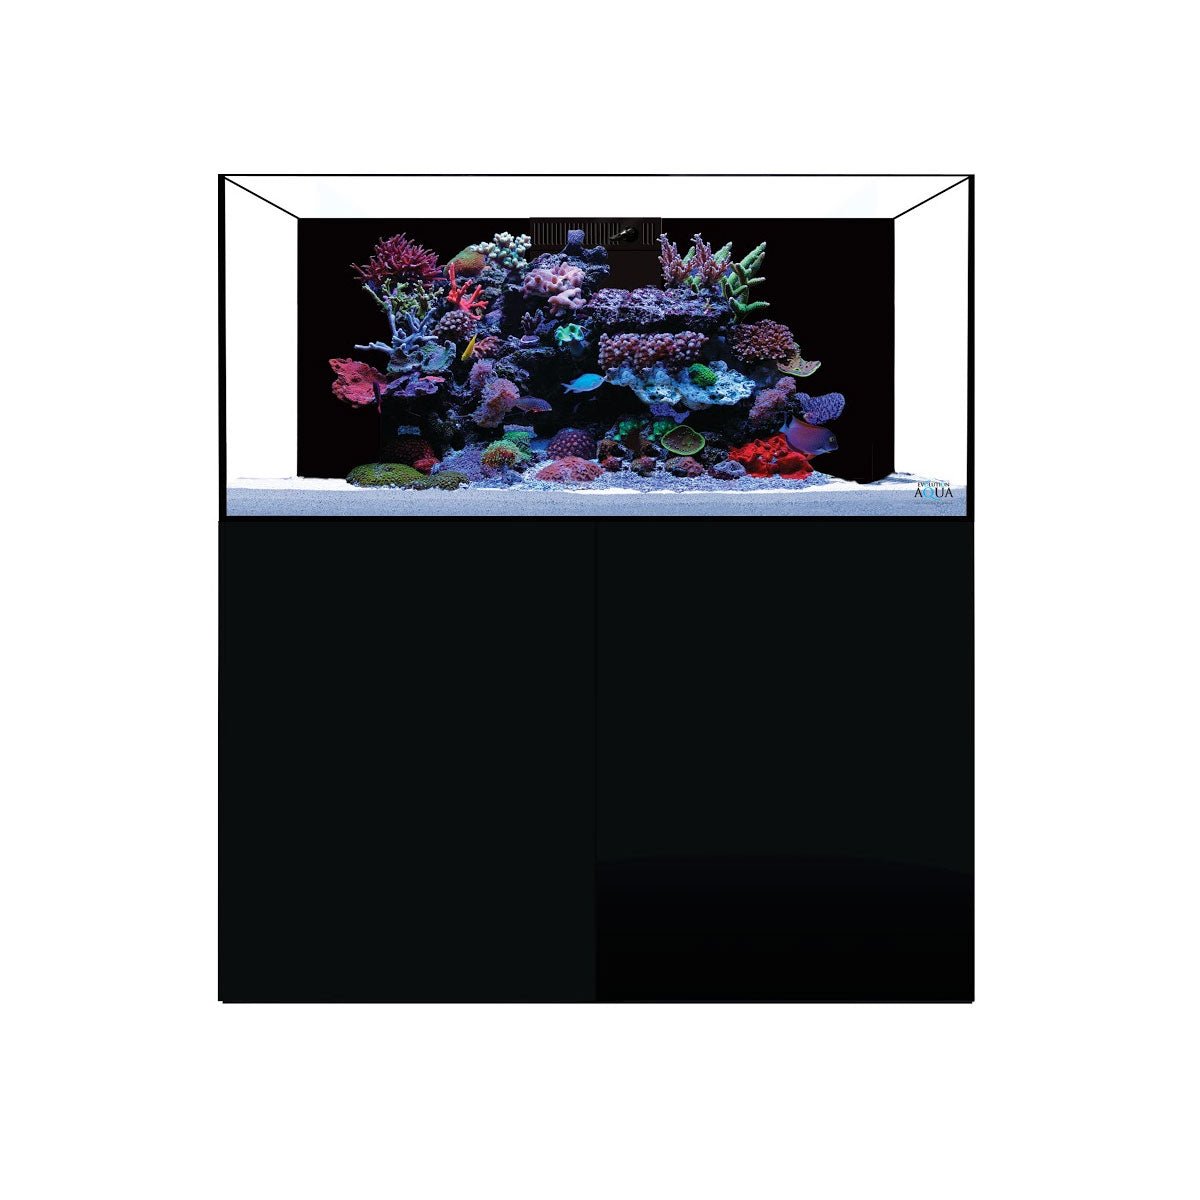 D-D Aqua-Pro Reef 1200 - Satin Black - AquaFrame Cabinet - Charterhouse Aquatics